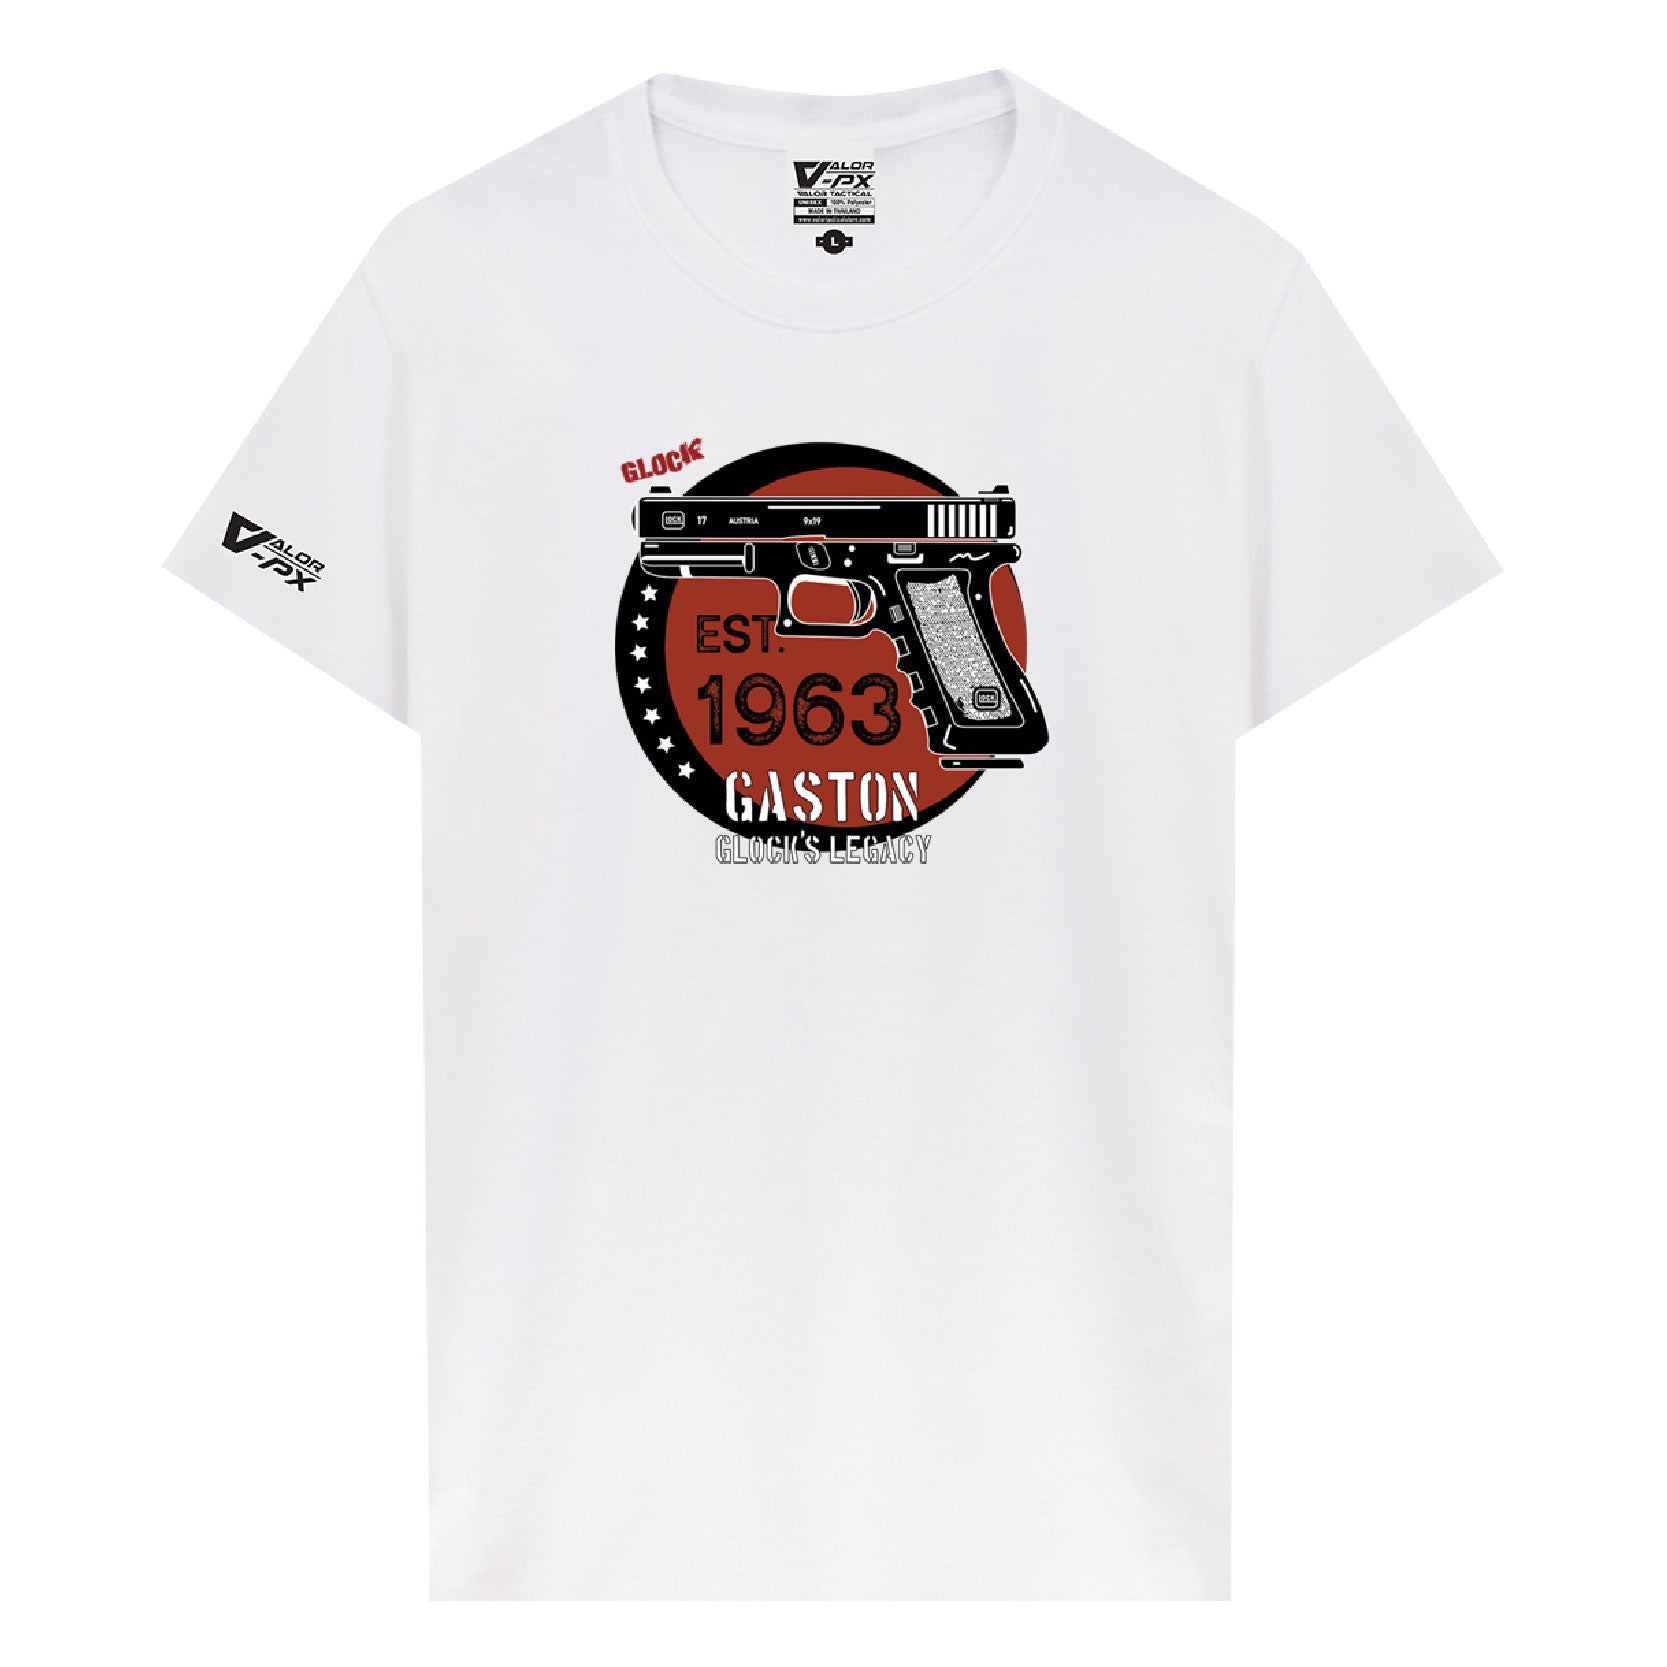 [ซื้อ 1 แถม 1] Valor PX Gaston Glock's Legacy T-Shirt